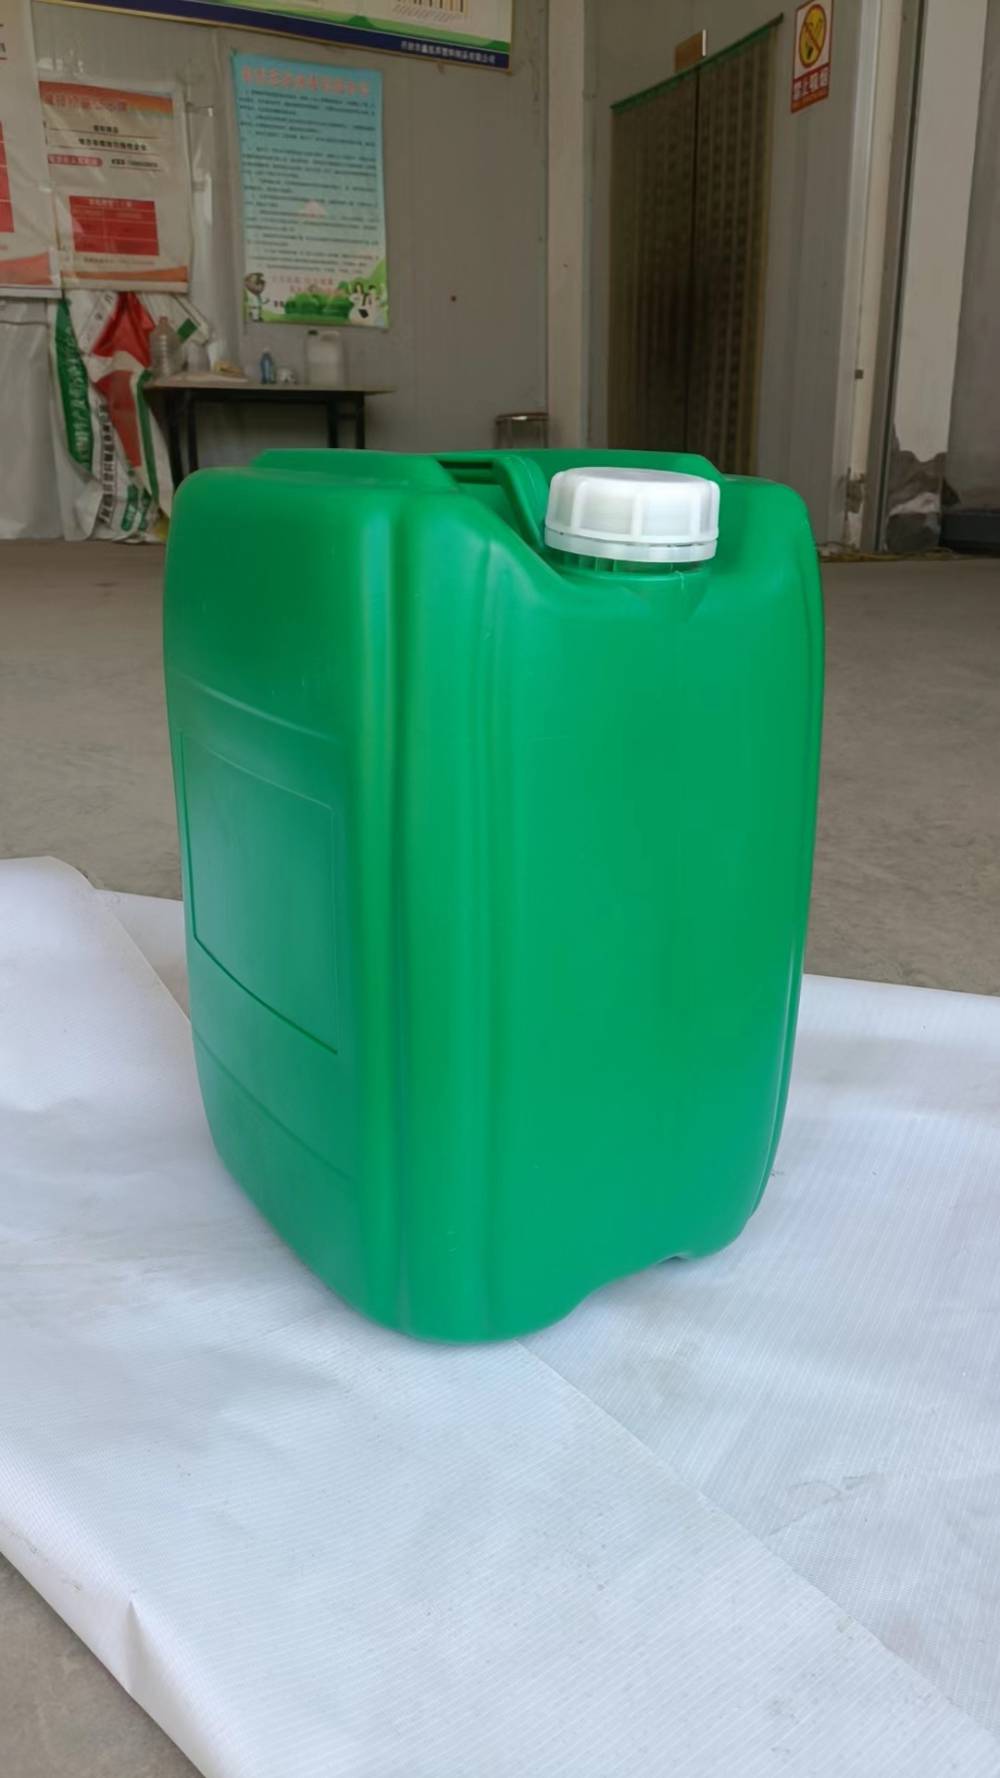 蓝色堆码塑料桶25L加厚耐酸耐碱水剂桶25升闭口包装桶工业化工桶